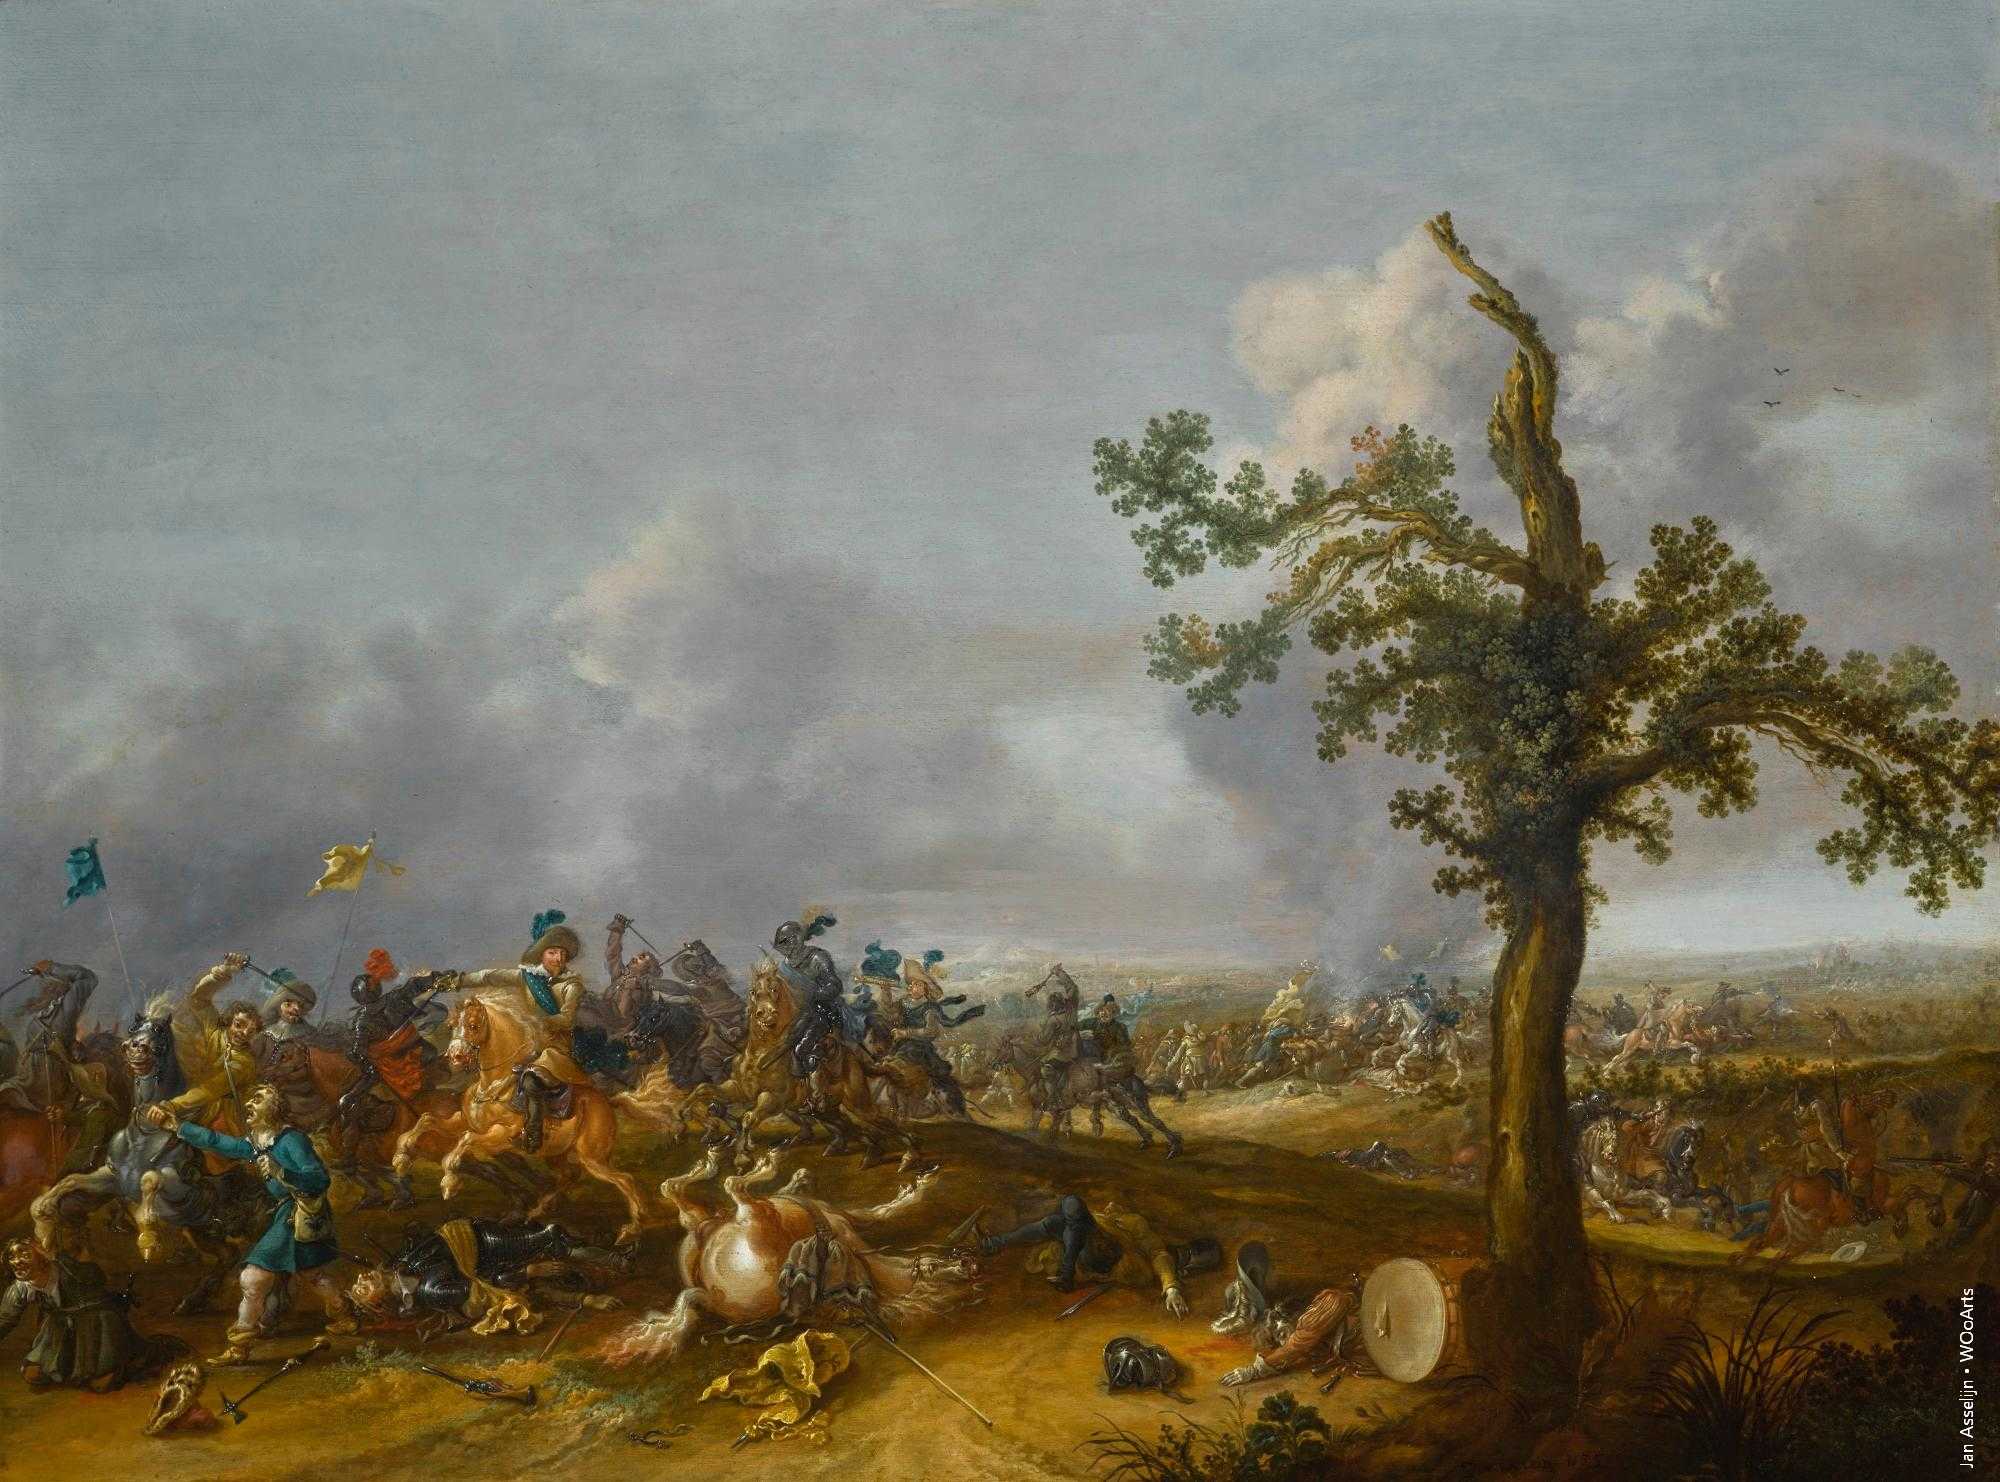 Painting by Jan Asselijn